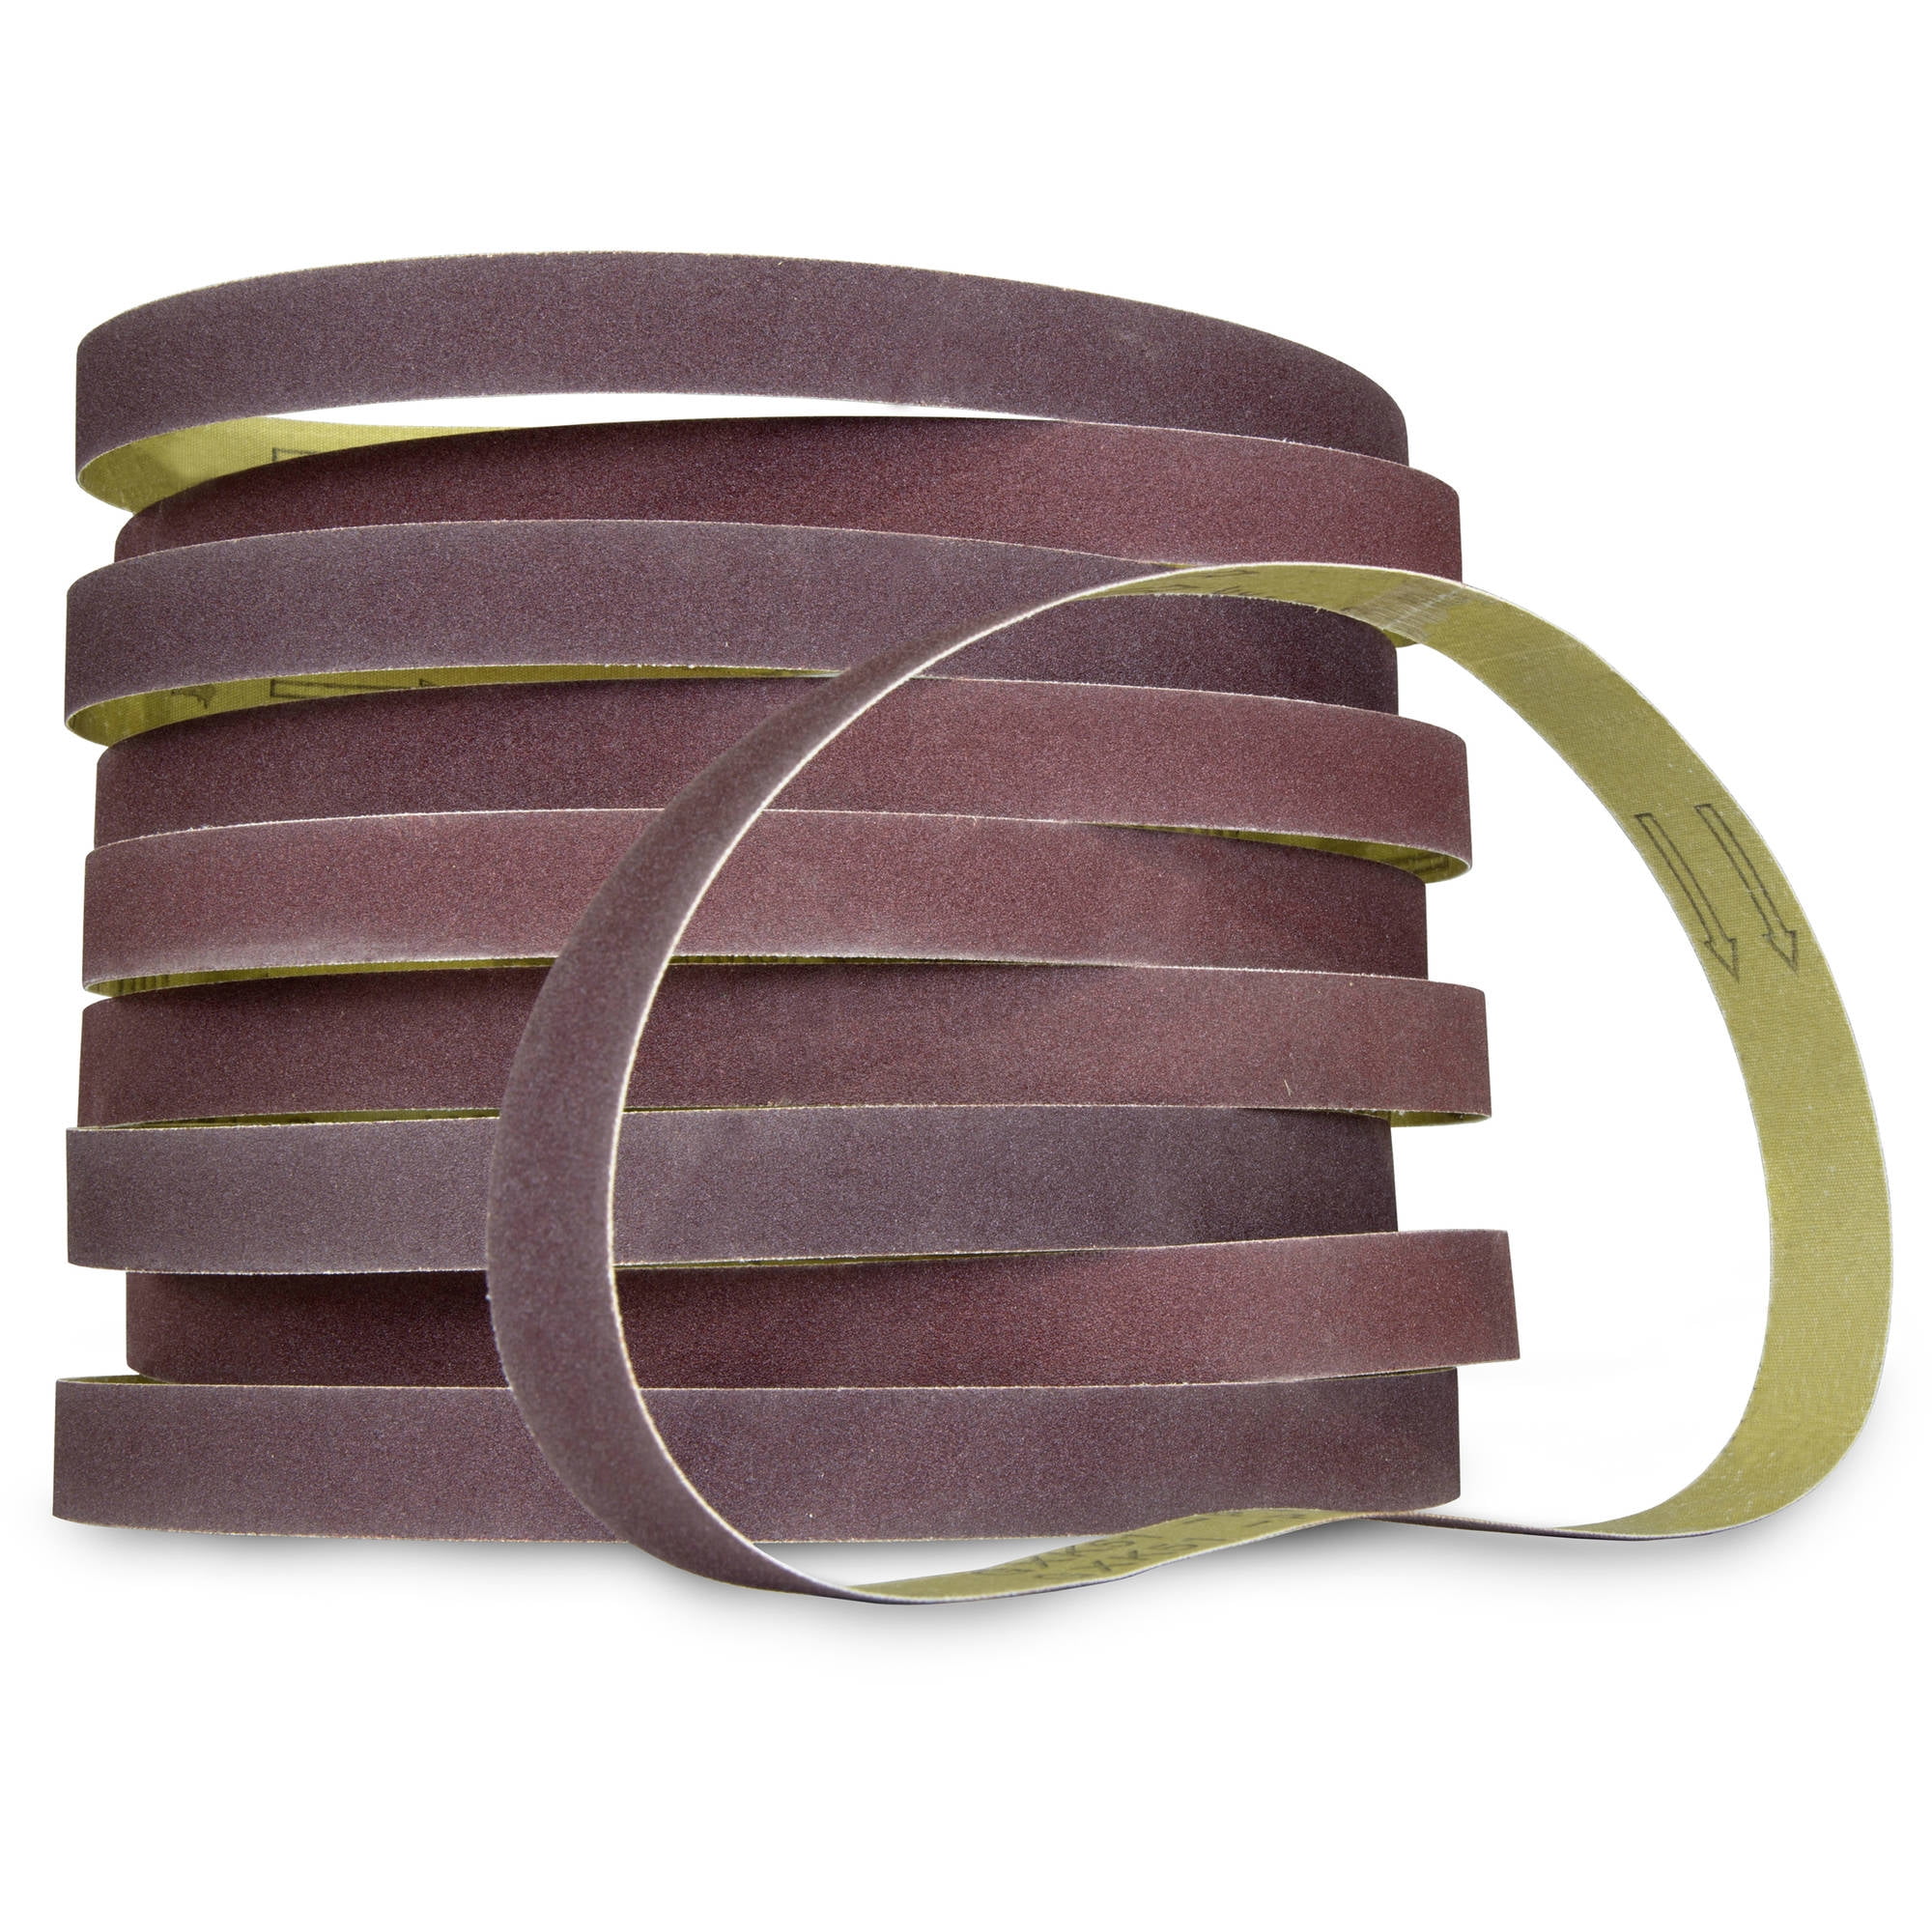 Sanding Belts Belt Sander Sheets 3/8 X 13inch Mixed Grits 50 Pack Sandpaper New 